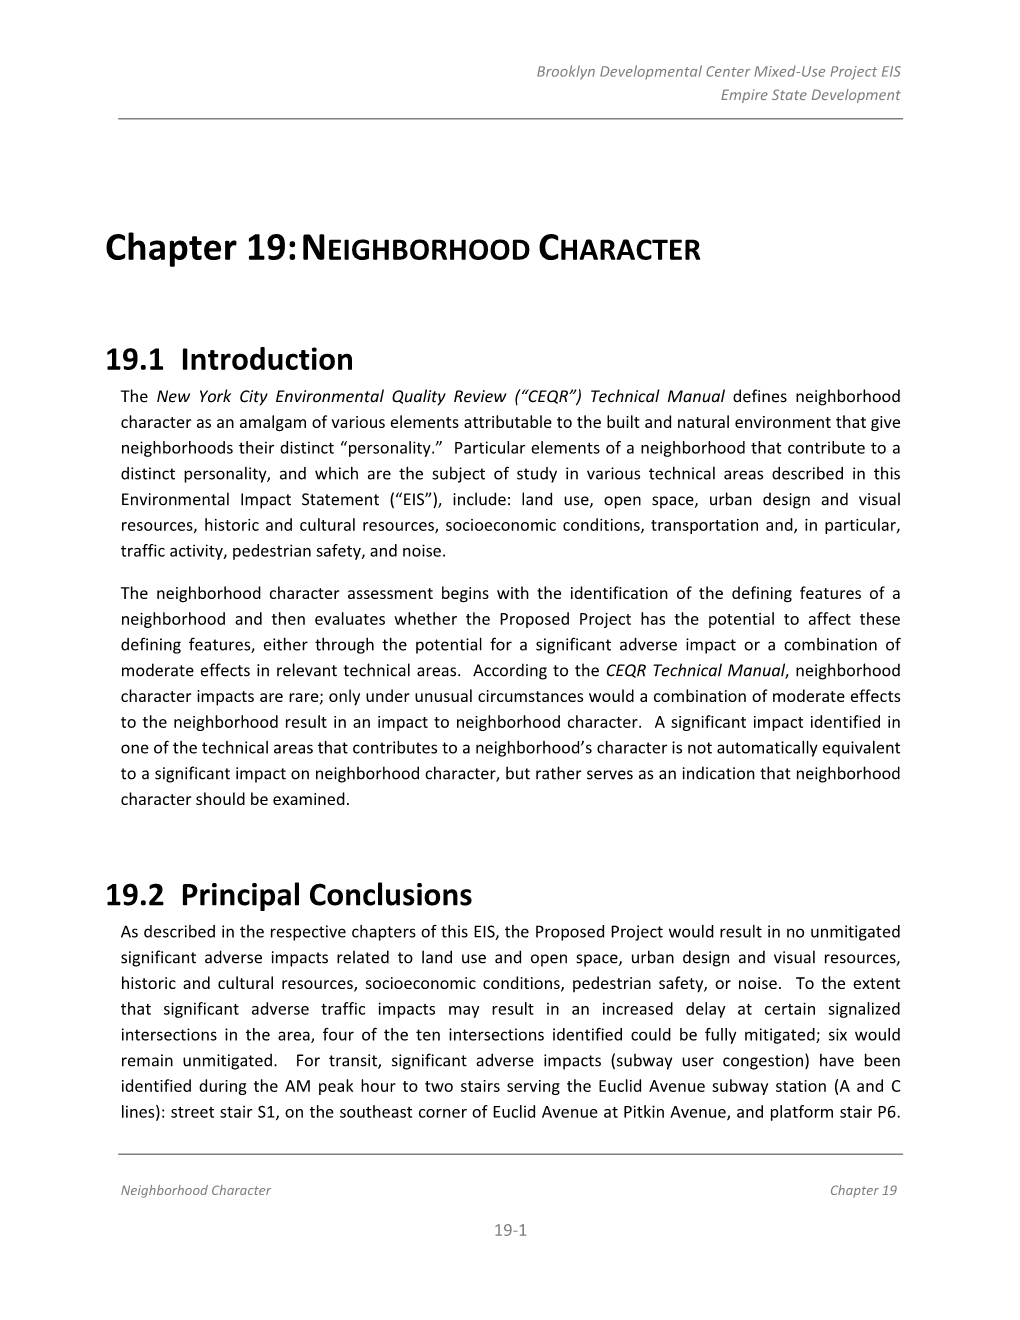 Chapter 19: NEIGHBORHOOD CHARACTER